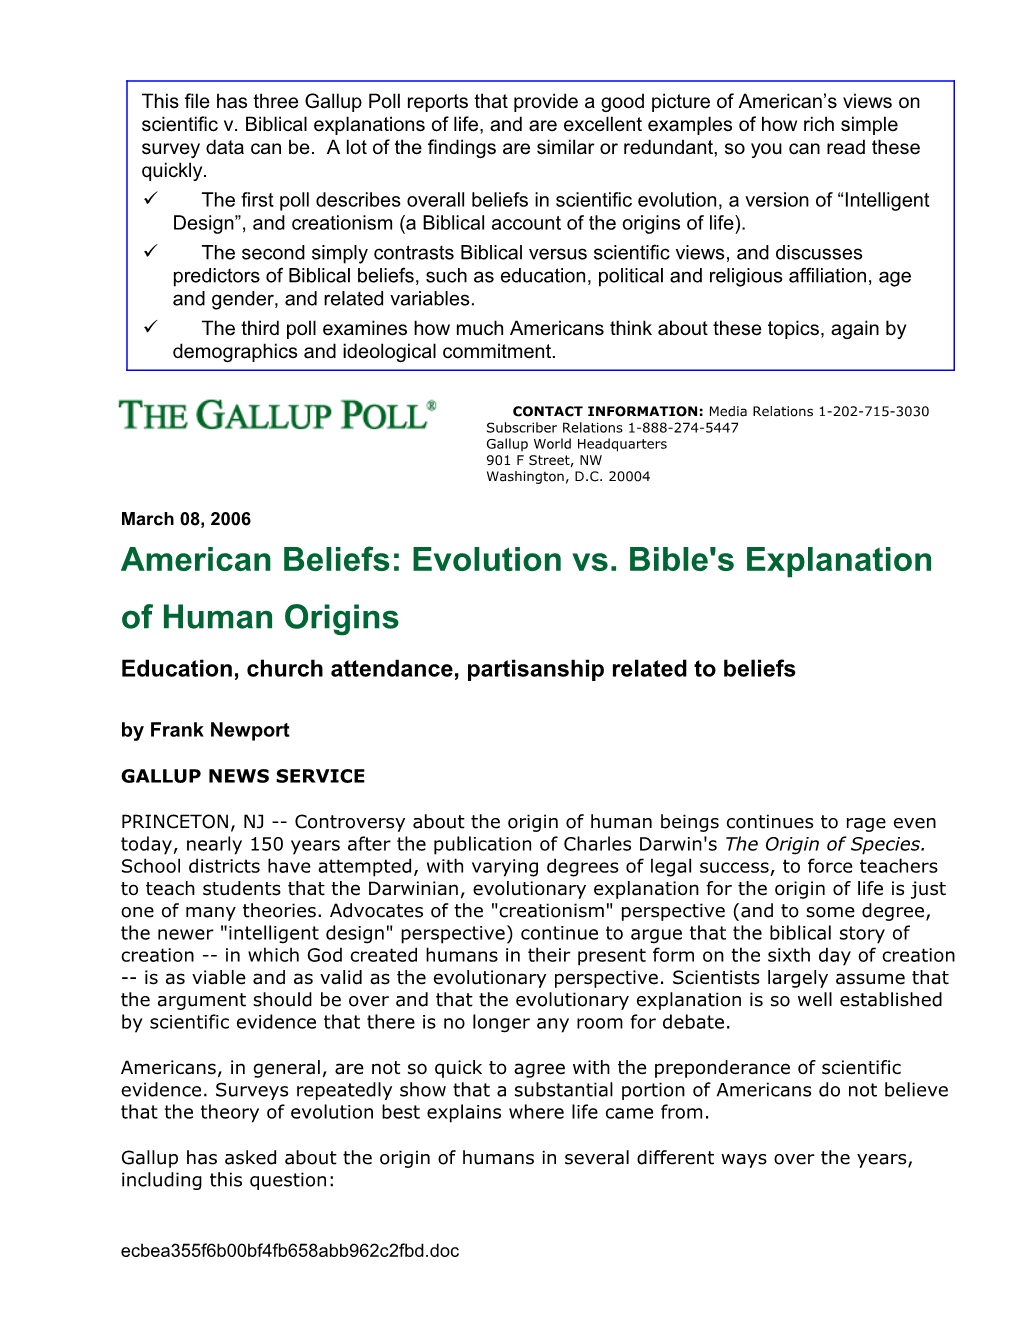 American Beliefs: Evolution Vs. Bible's Explanation of Human Origins